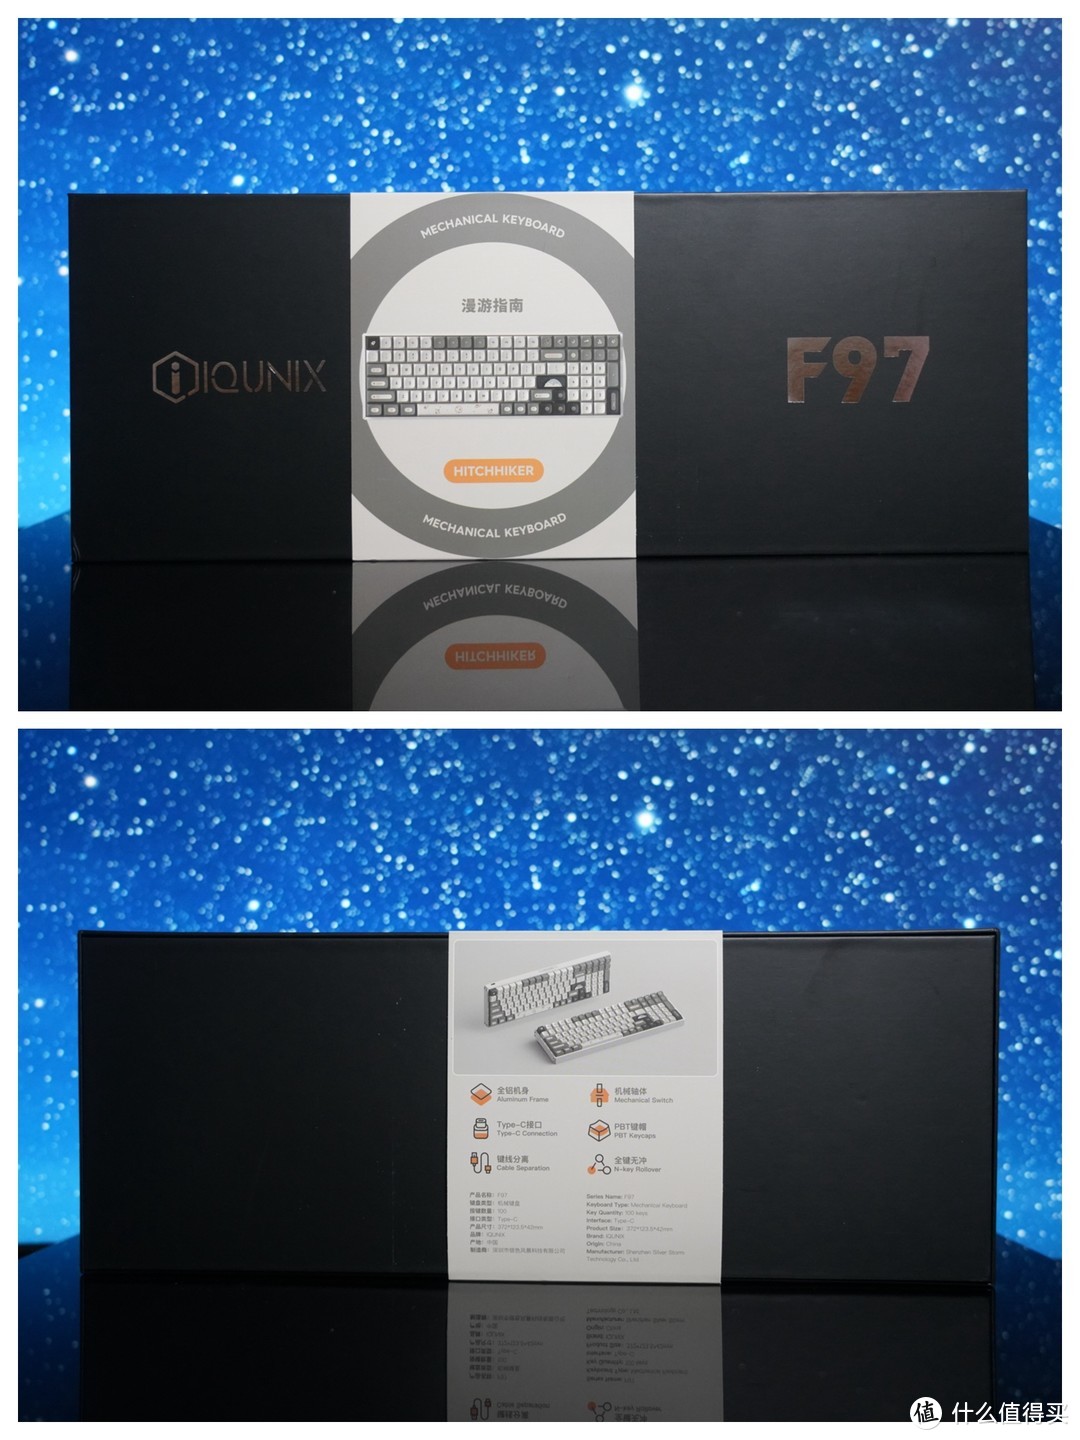 新入 IQUNIX F97漫游指南三模键盘 更新我的无线桌面设备